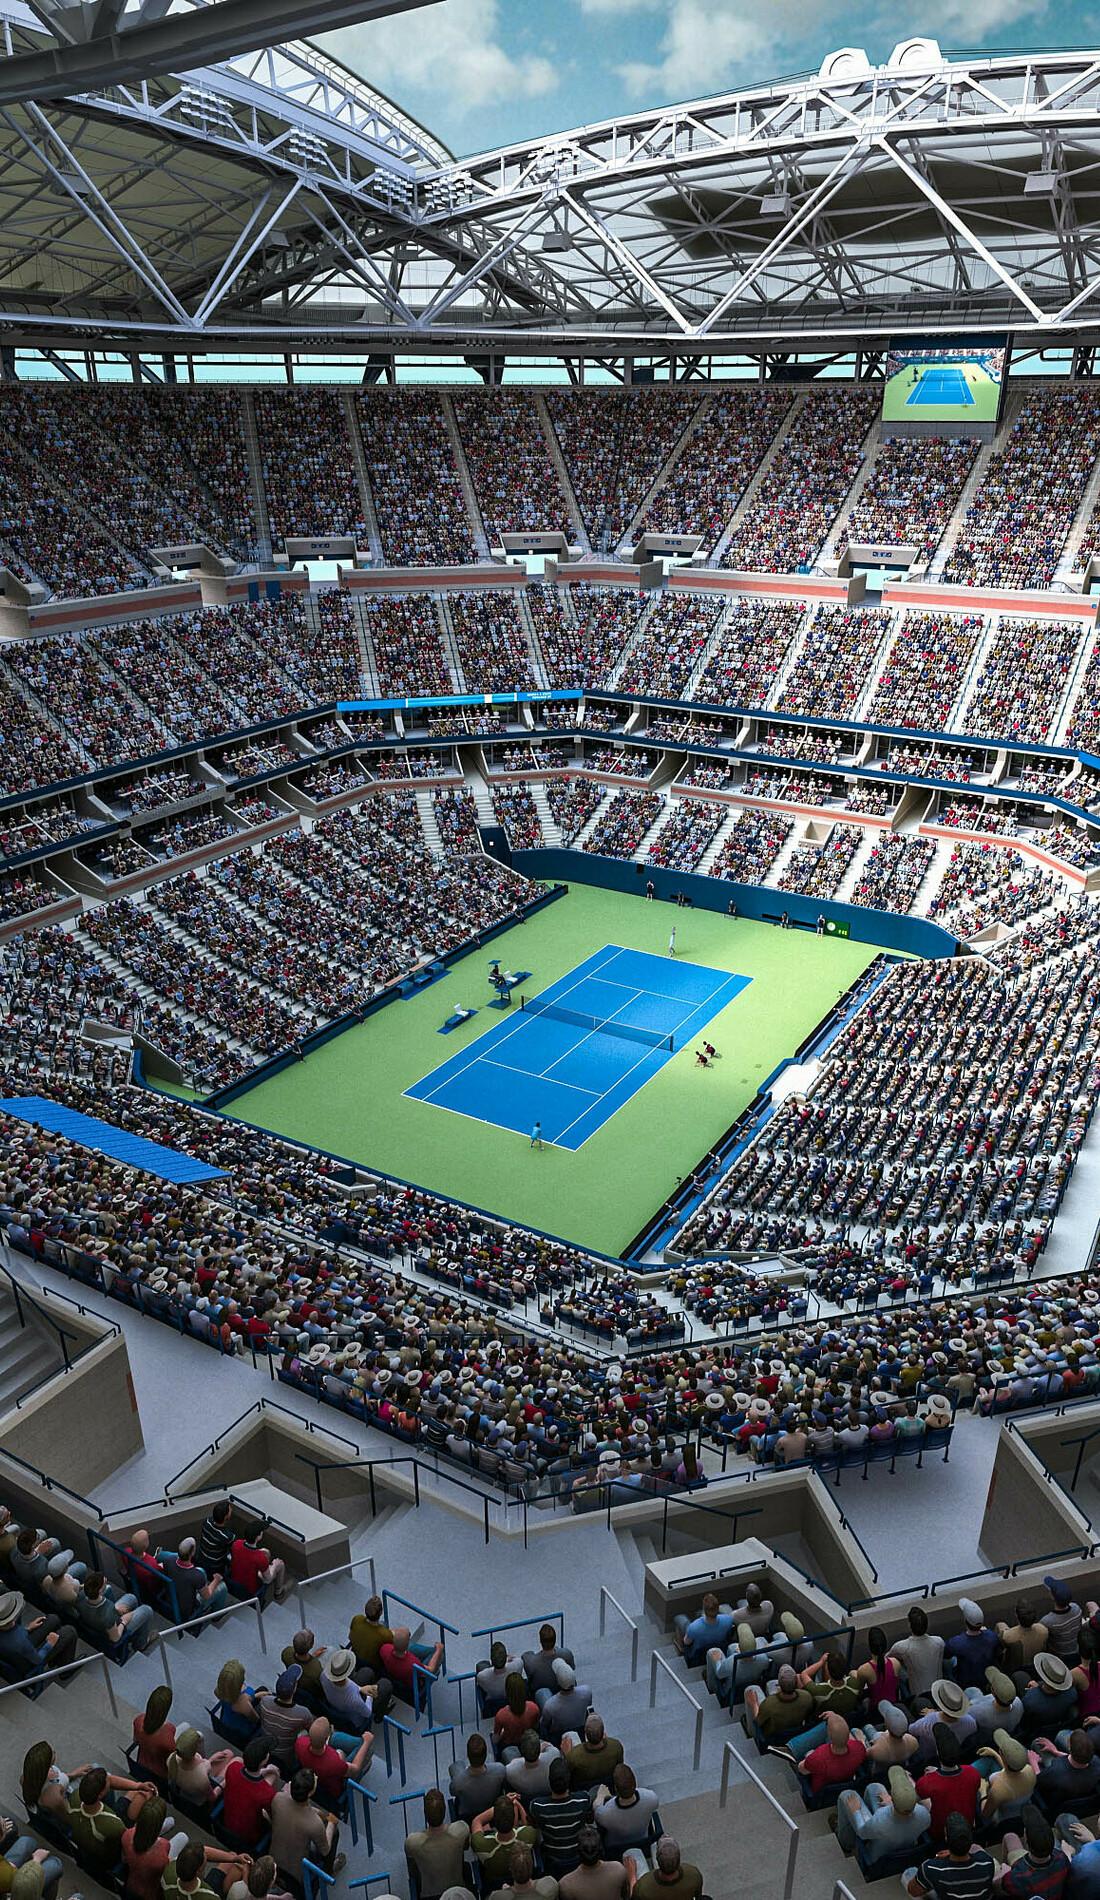 Ingressos para o US Open Tennis 2023 